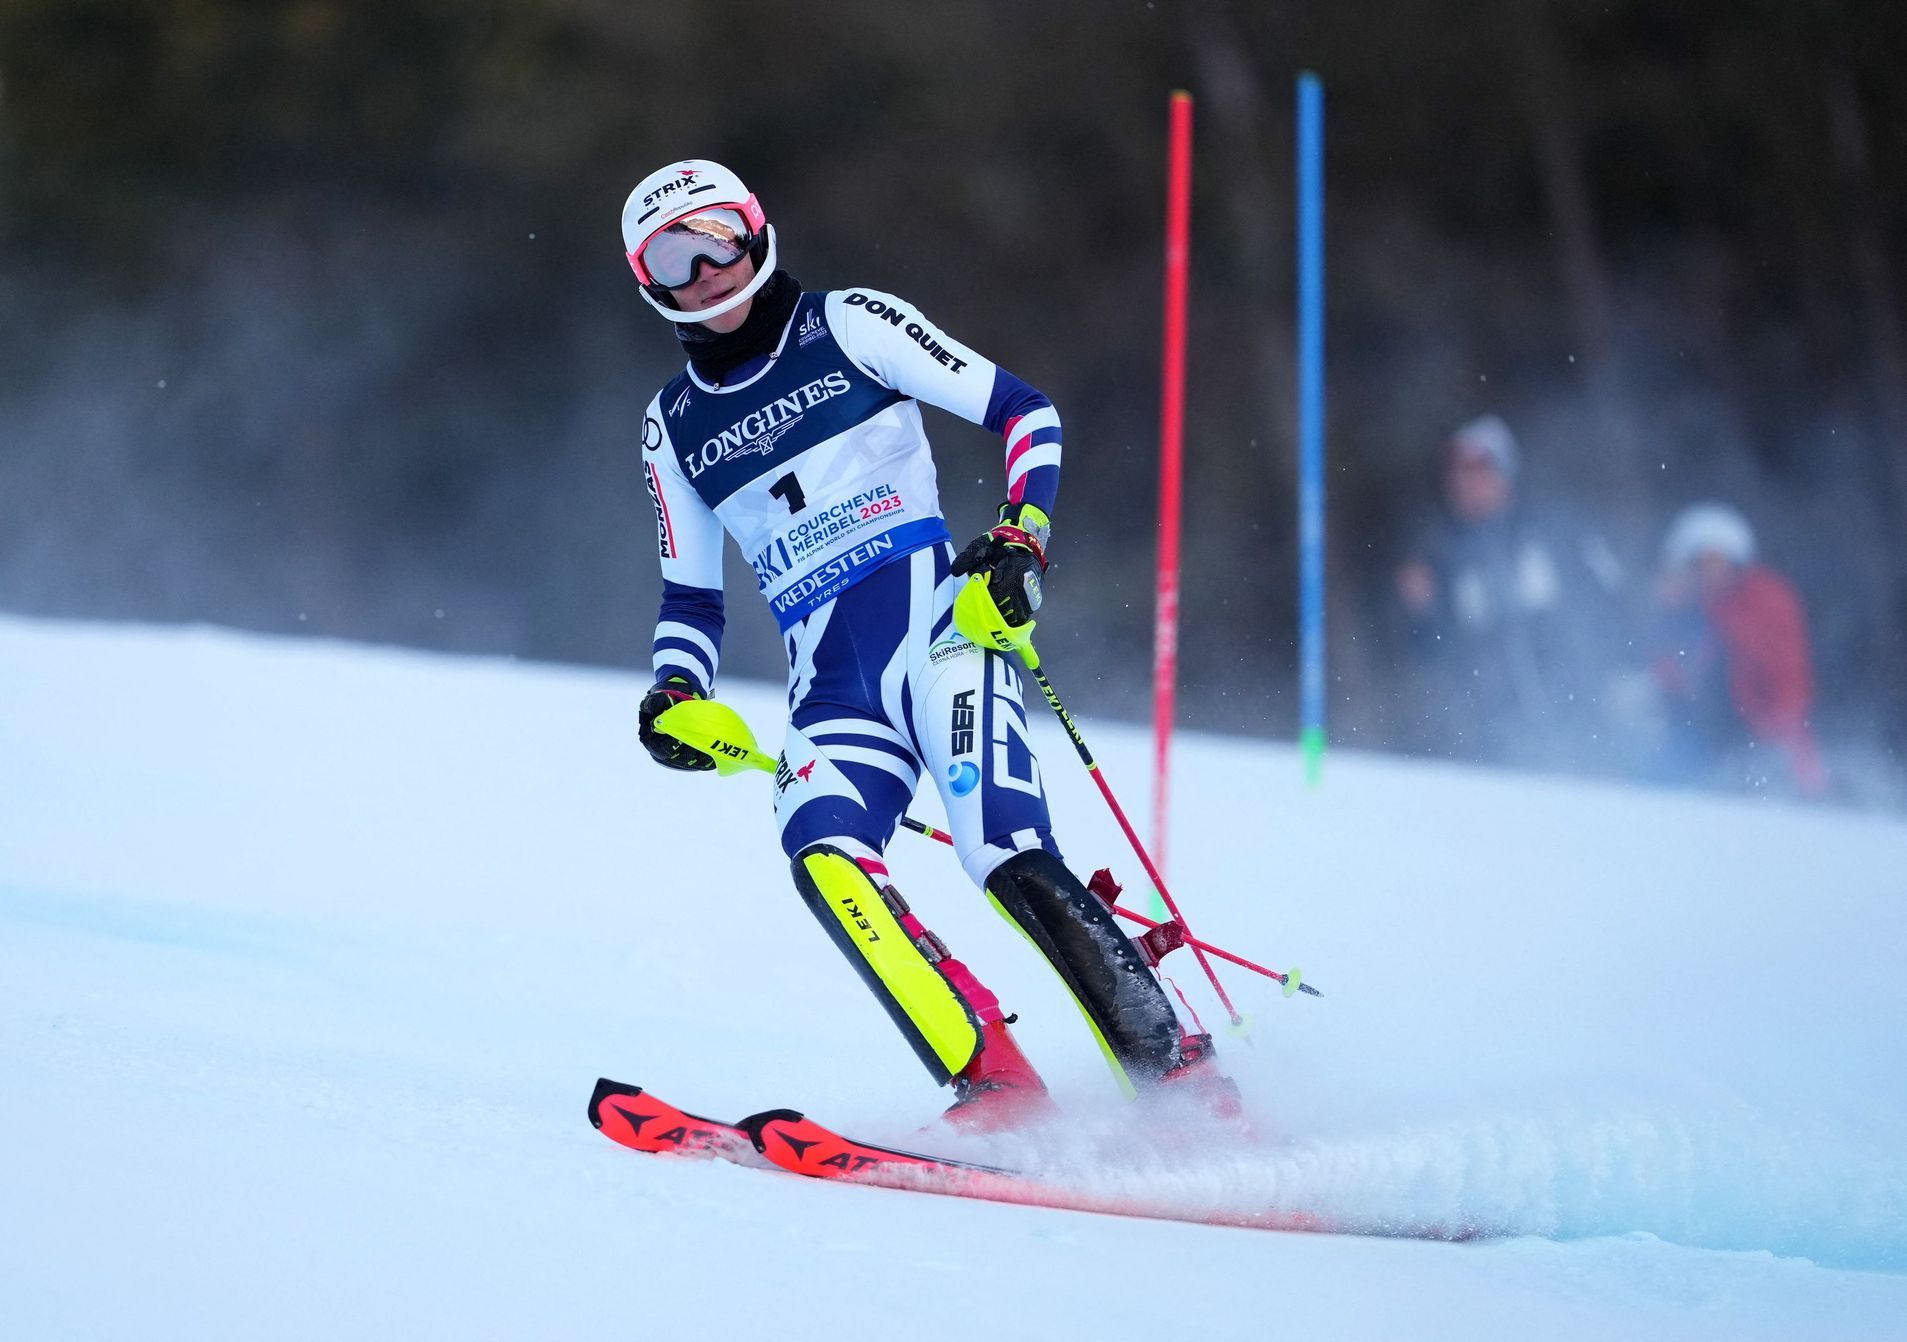 Zabystřán n’a pas terminé le slalom combiné aux Championnats du monde, que Pinturault a remporté à domicile